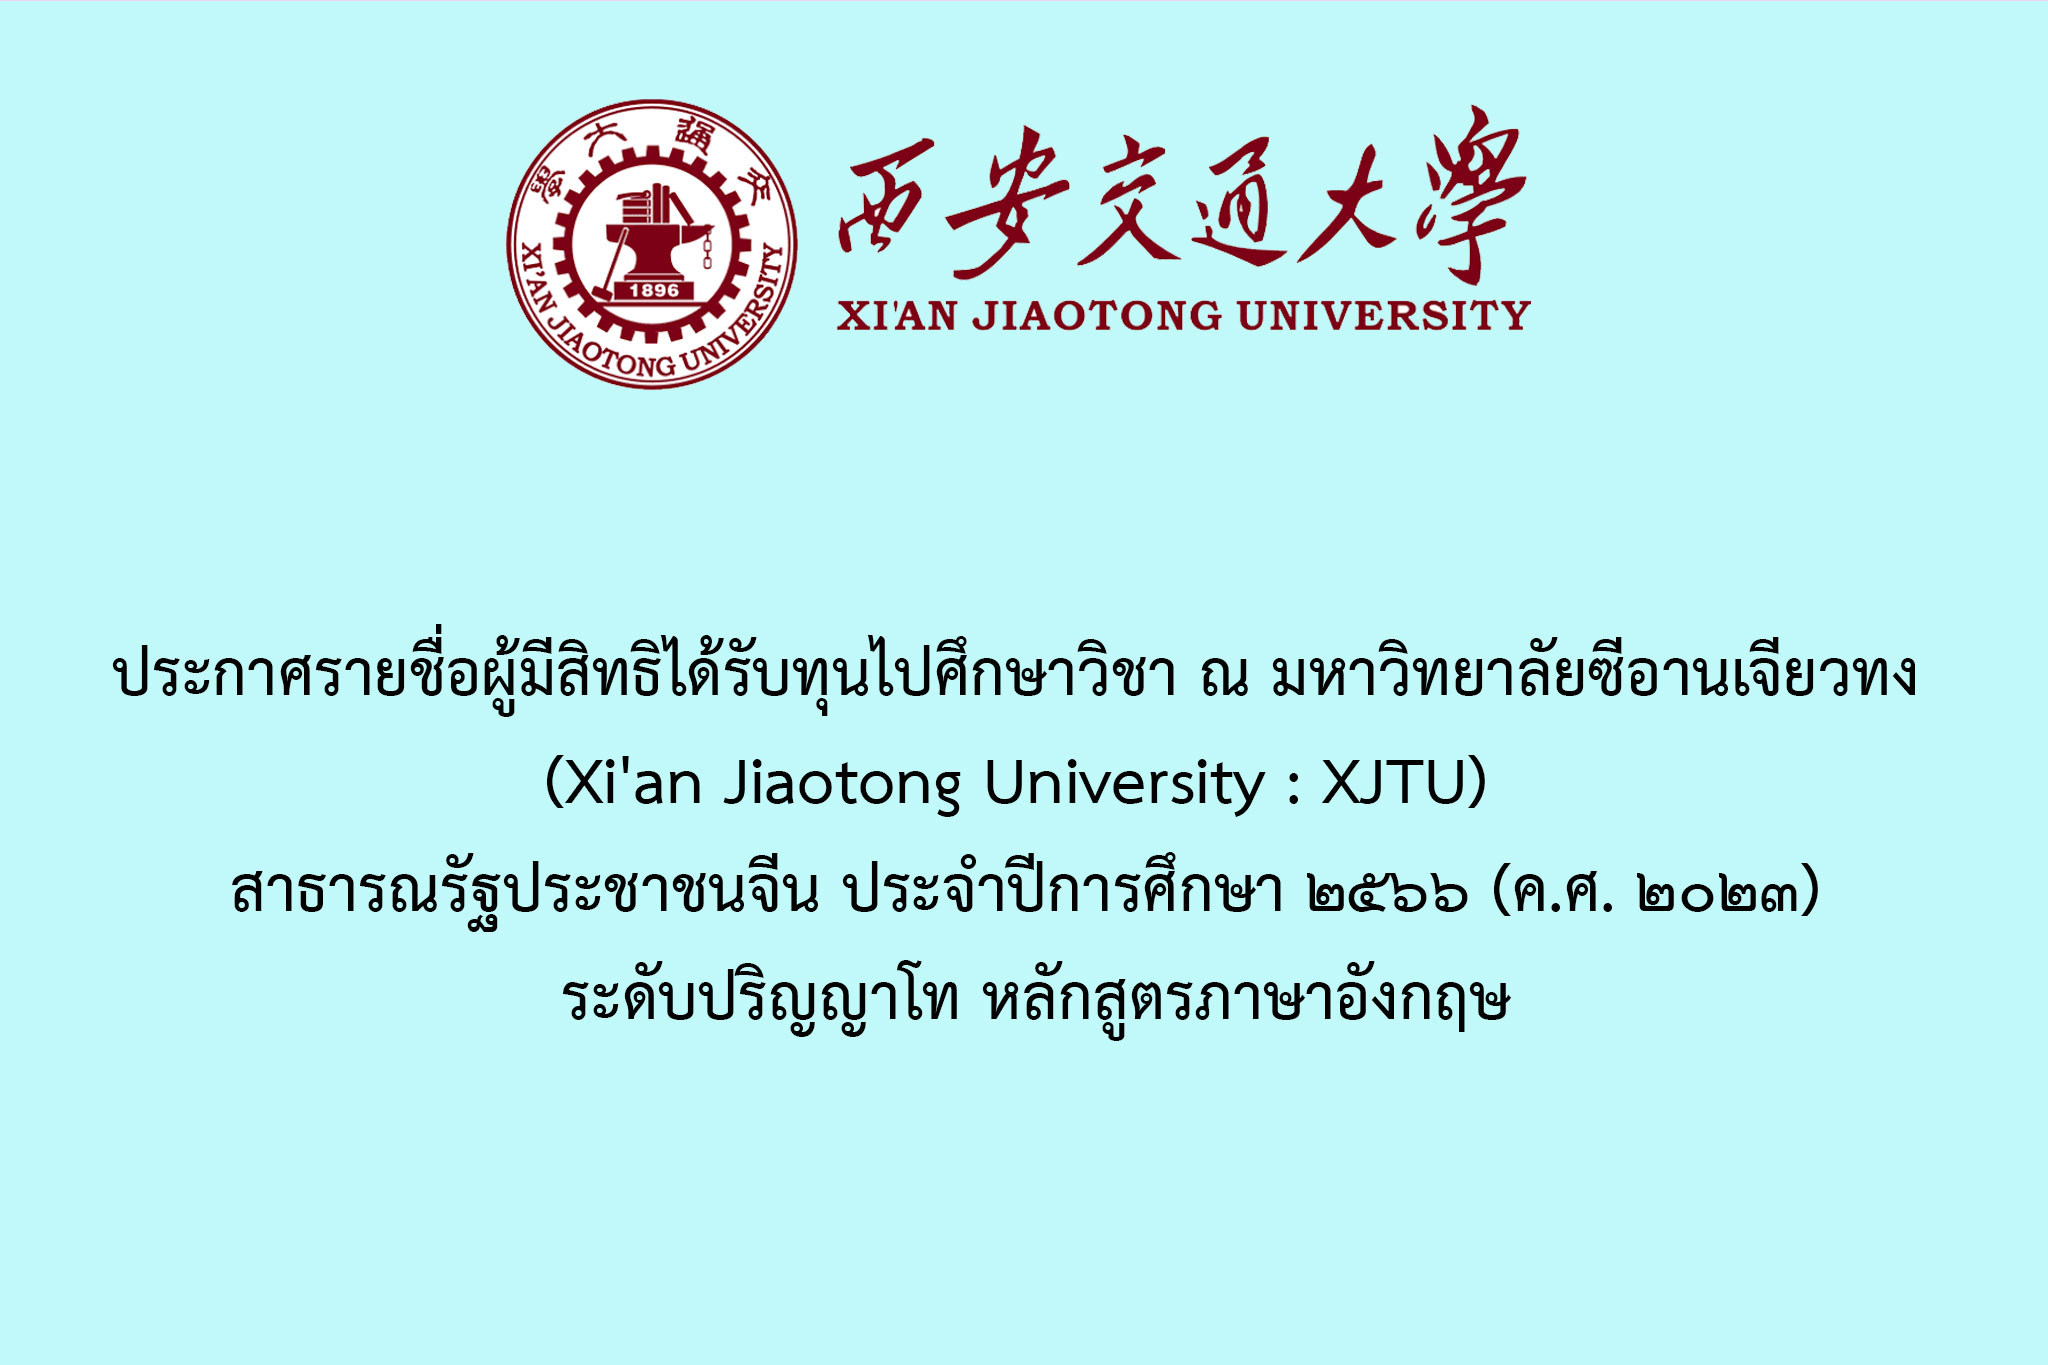 ประกาศรายชื่อผู้มีสิทธิได้รับทุนไปศึกษาวิชา ณ มหาวิทยาลัยซีอานเจียวทง (Xi'an Jiaotong University : XJTU) สาธารณรัฐประชาชนจีน ประจำปีการศึกษา ๒๕๖๖ (ค.ศ. ๒๐๒๓) ระดับปริญญาโท หลักสูตรภาษาอังกฤษ